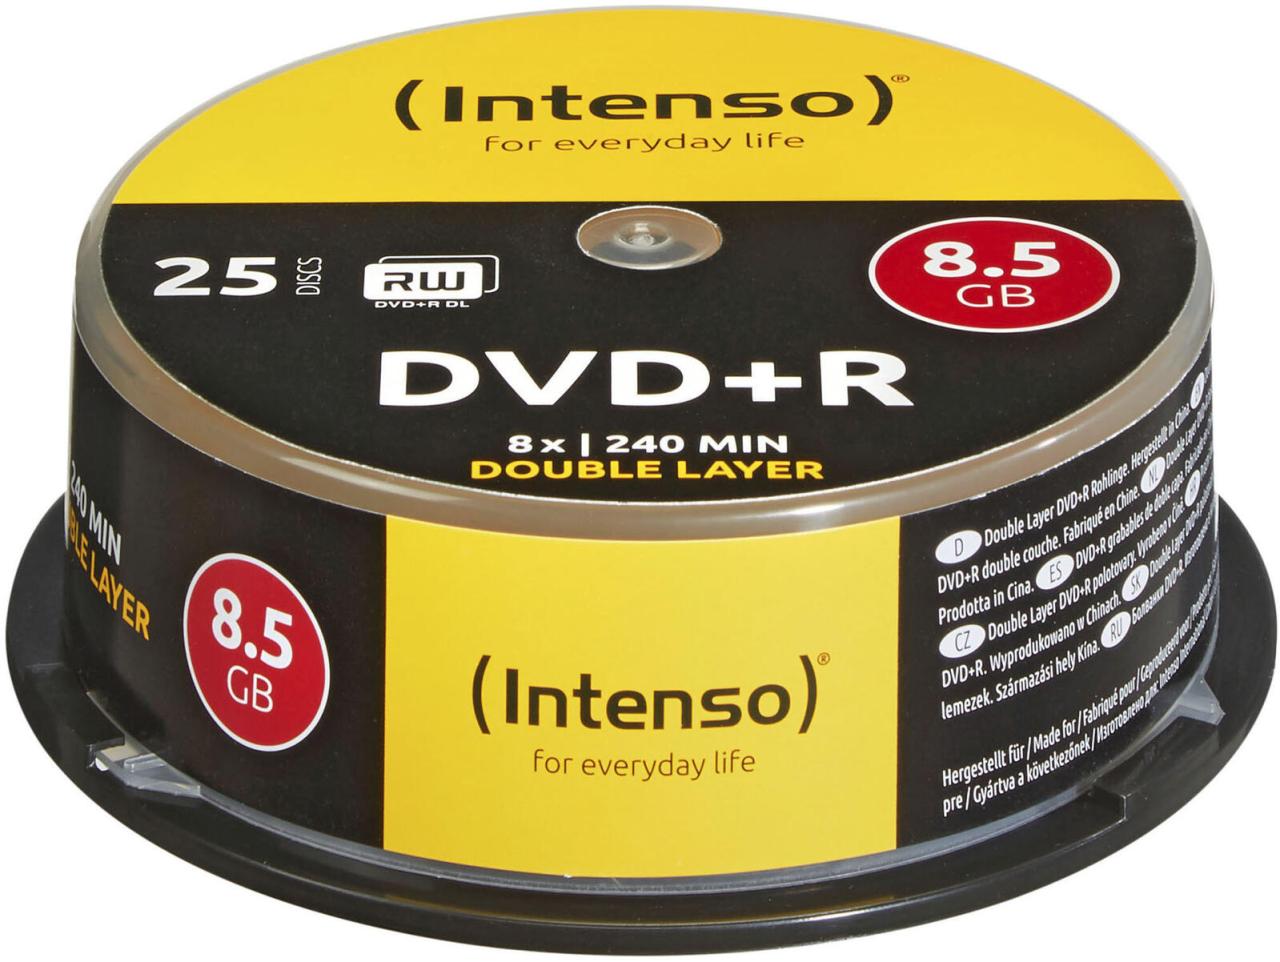 Intenso DVD+R DL 8,5GB 25 Spin Spindel von Intenso